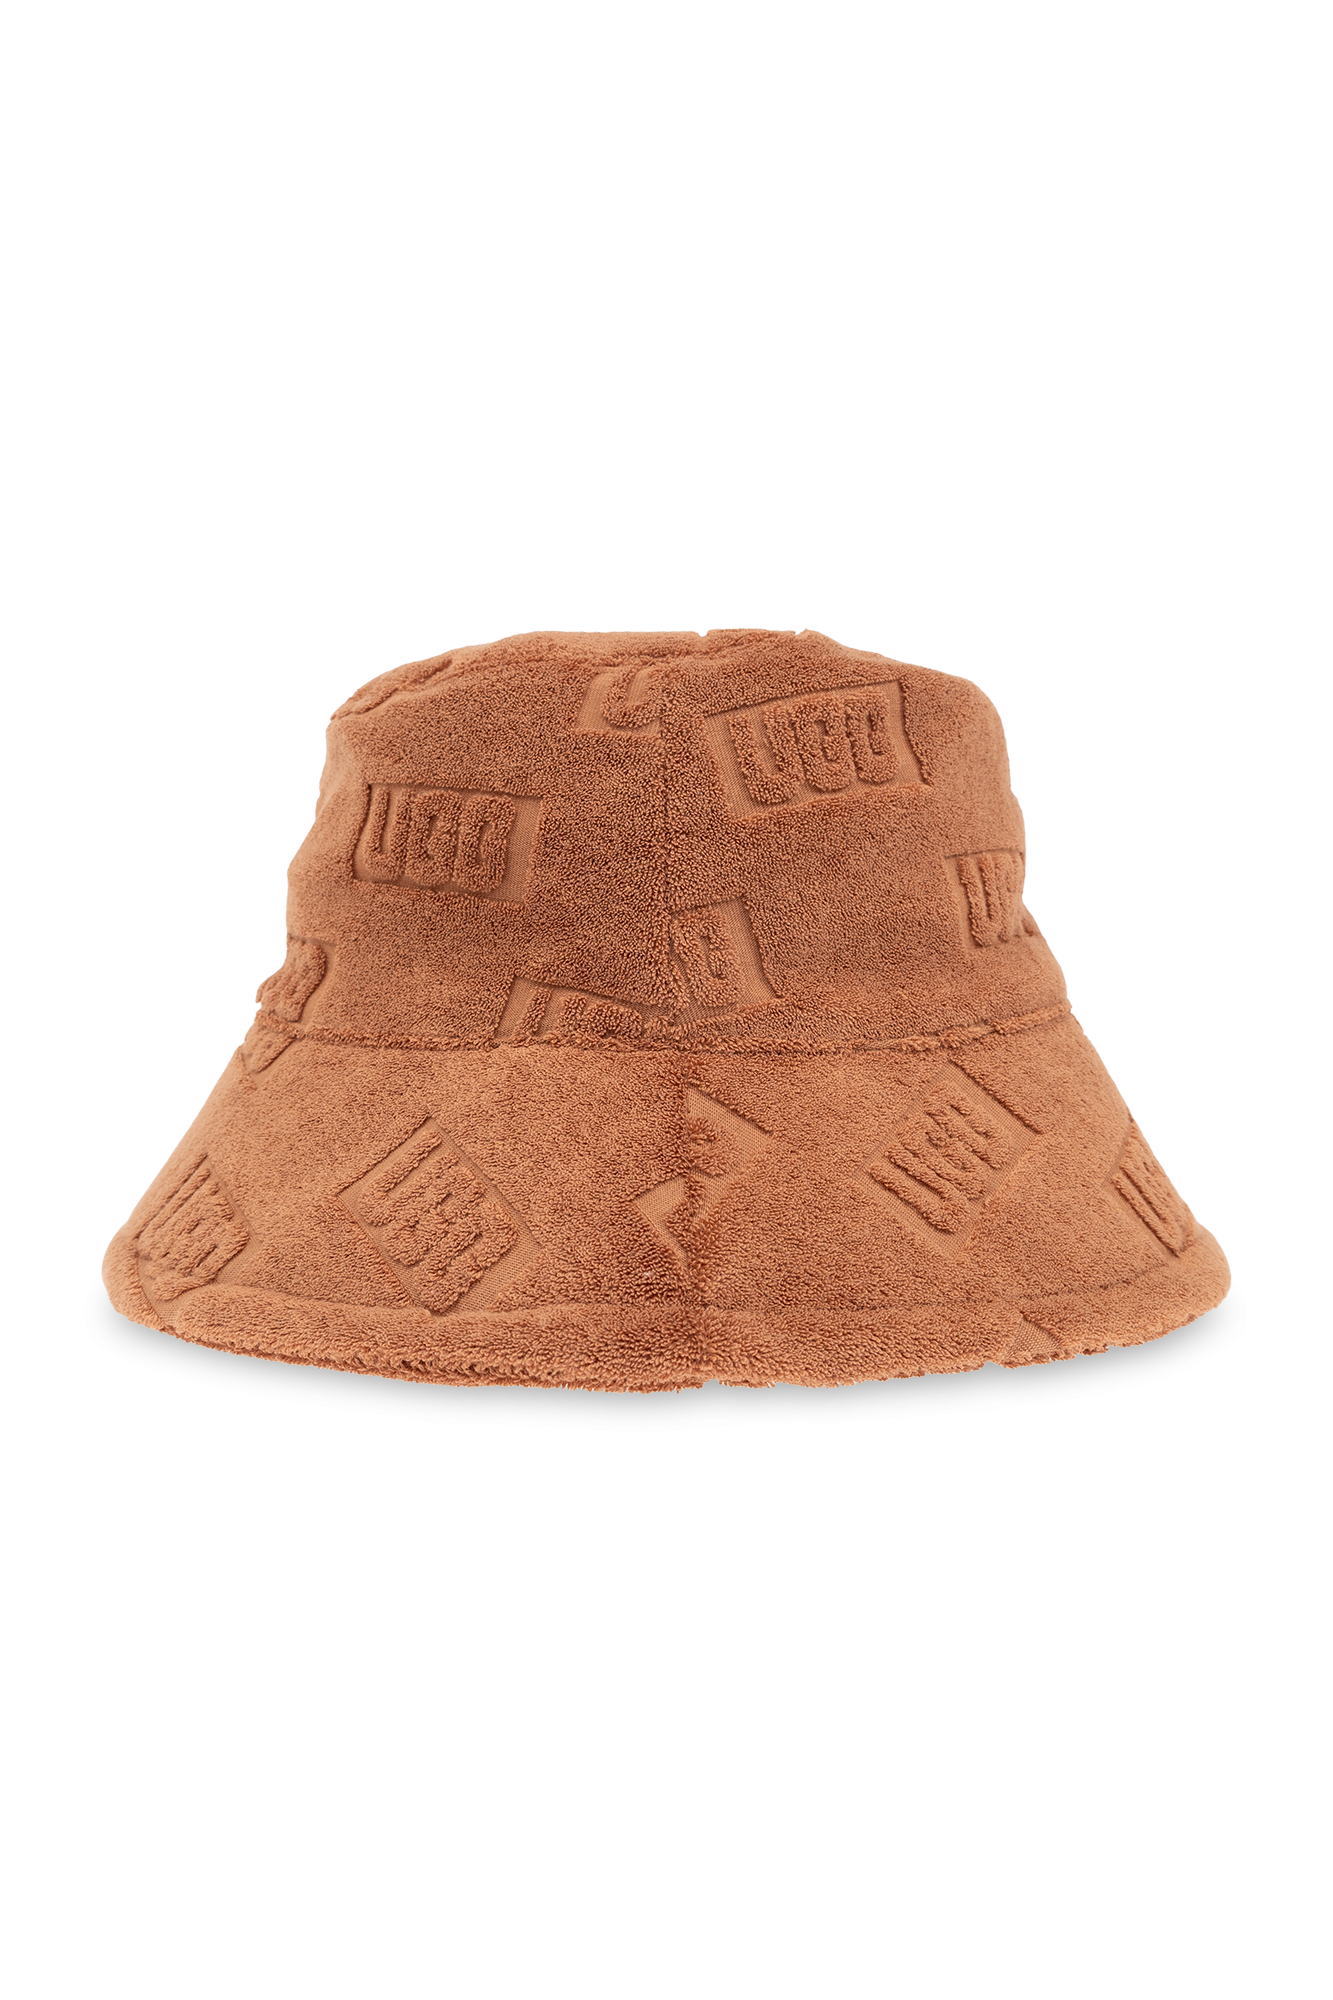 UGG ‘Bucket’ type hat